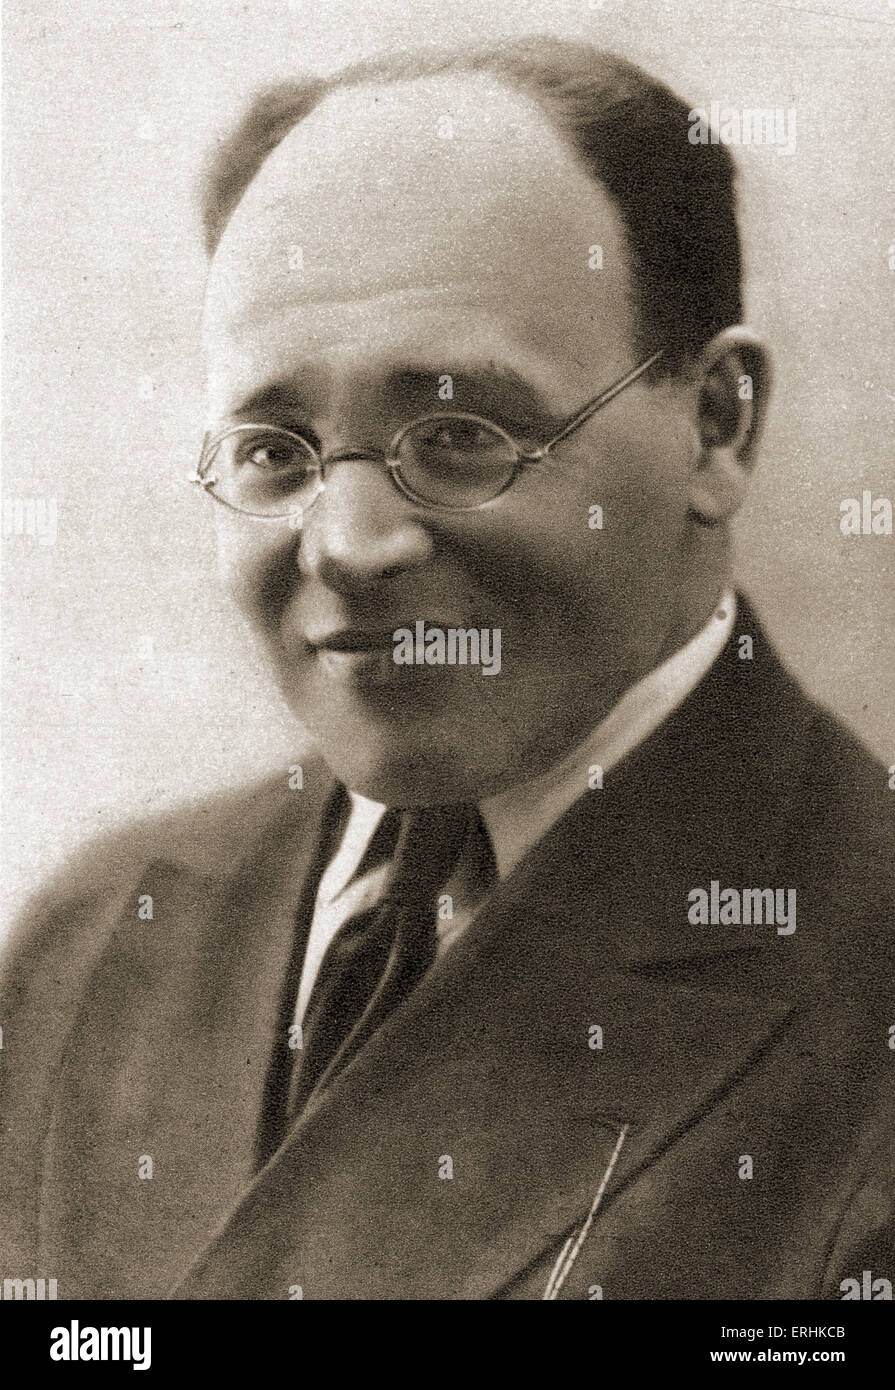 Isaac Babel portrait. L'écrivain soviétique de Russie. Juillet 1894 - Janvier 1940 Banque D'Images